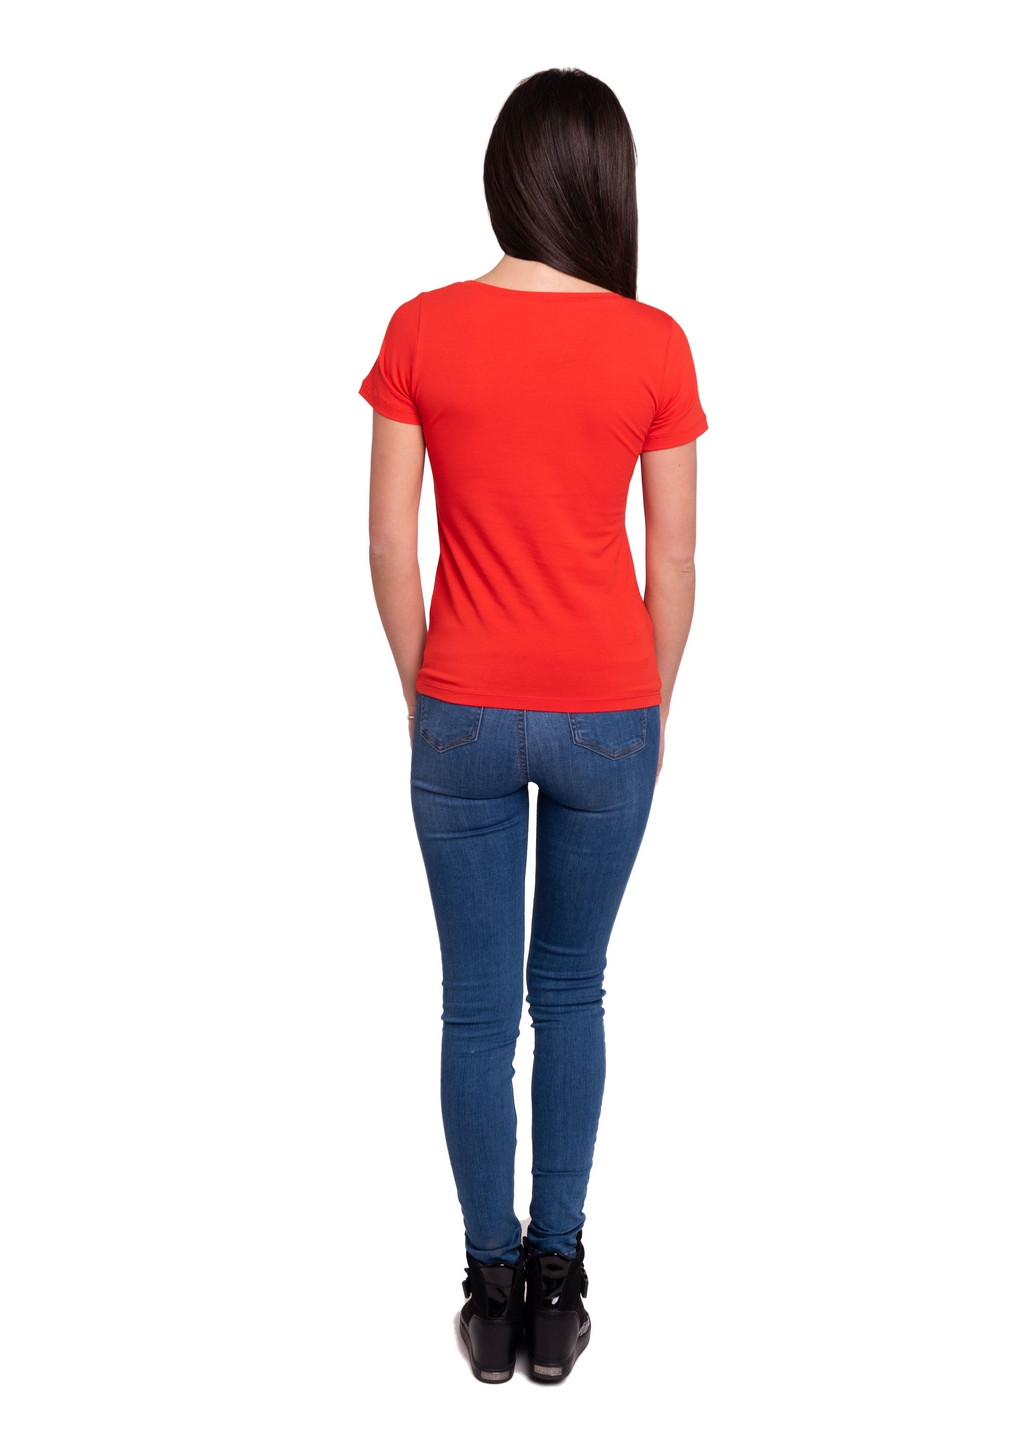 Червона всесезон футболка жіноча Наталюкс 41-2347